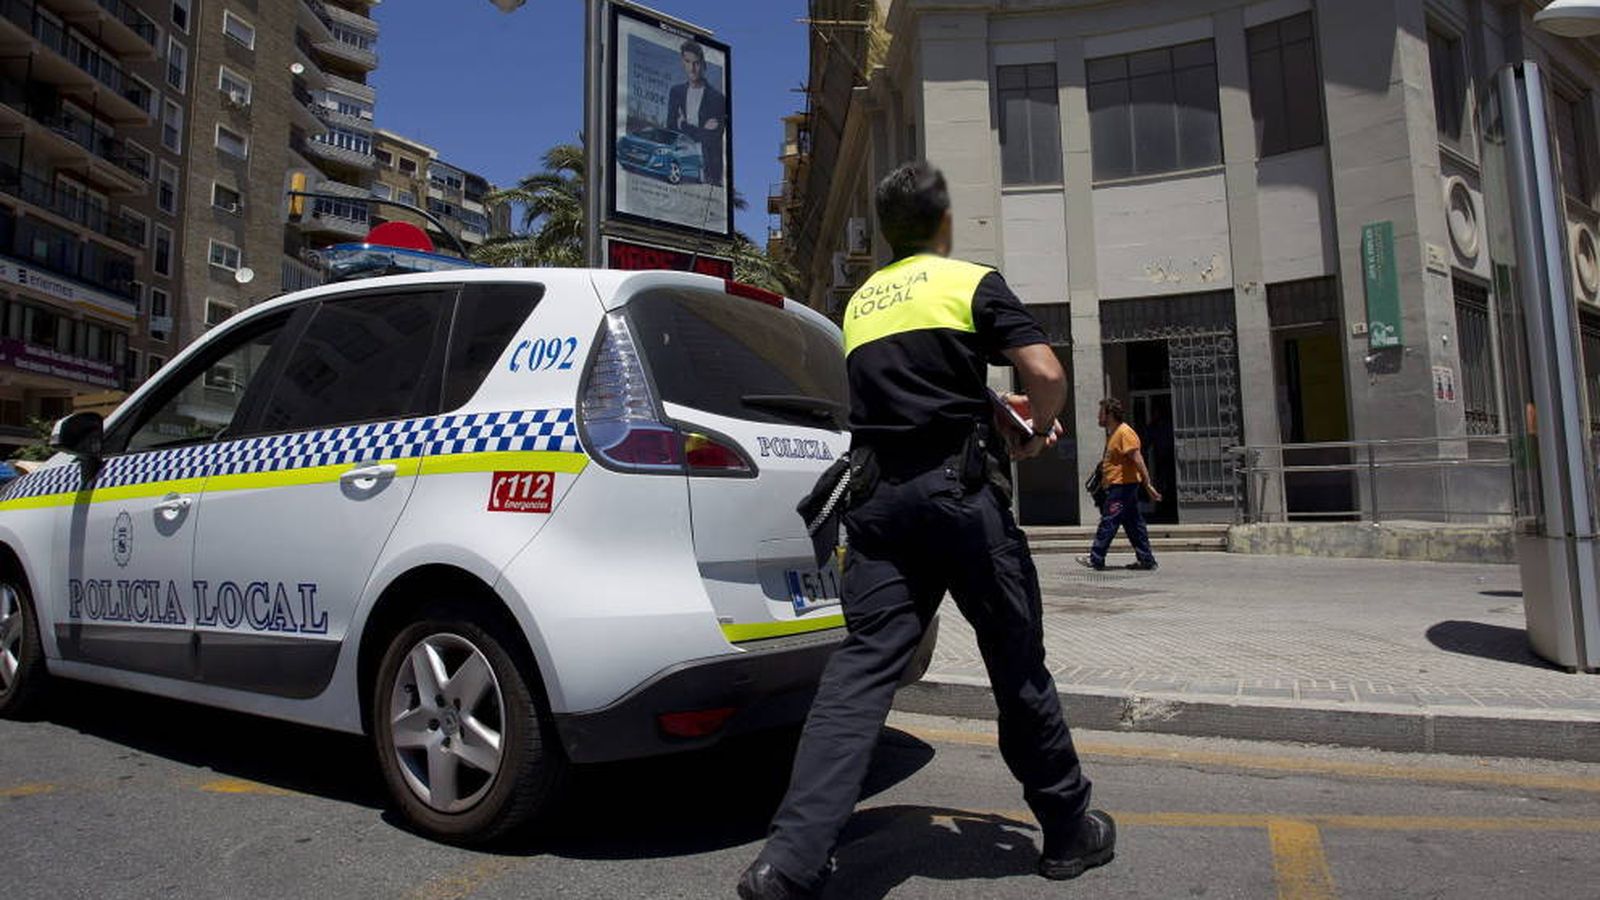 Foto: El expediente abierto al policía local de Cádiz ha terminado dictaminando su expulsión